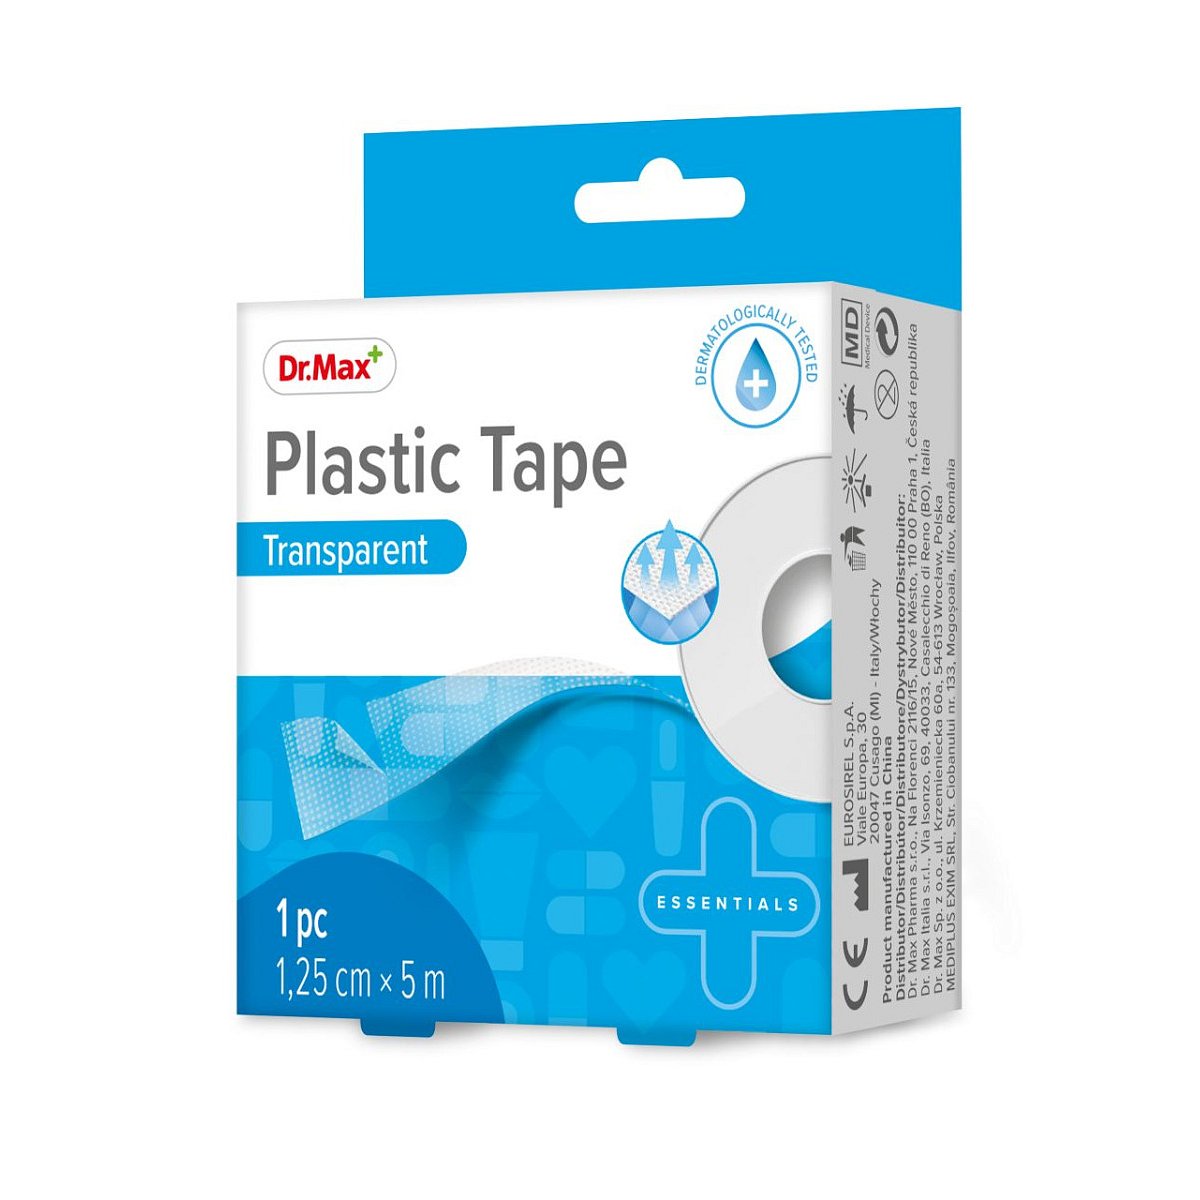 Dr.Max Plastic Tape Transparent 1,25cm x 5m 1 ks